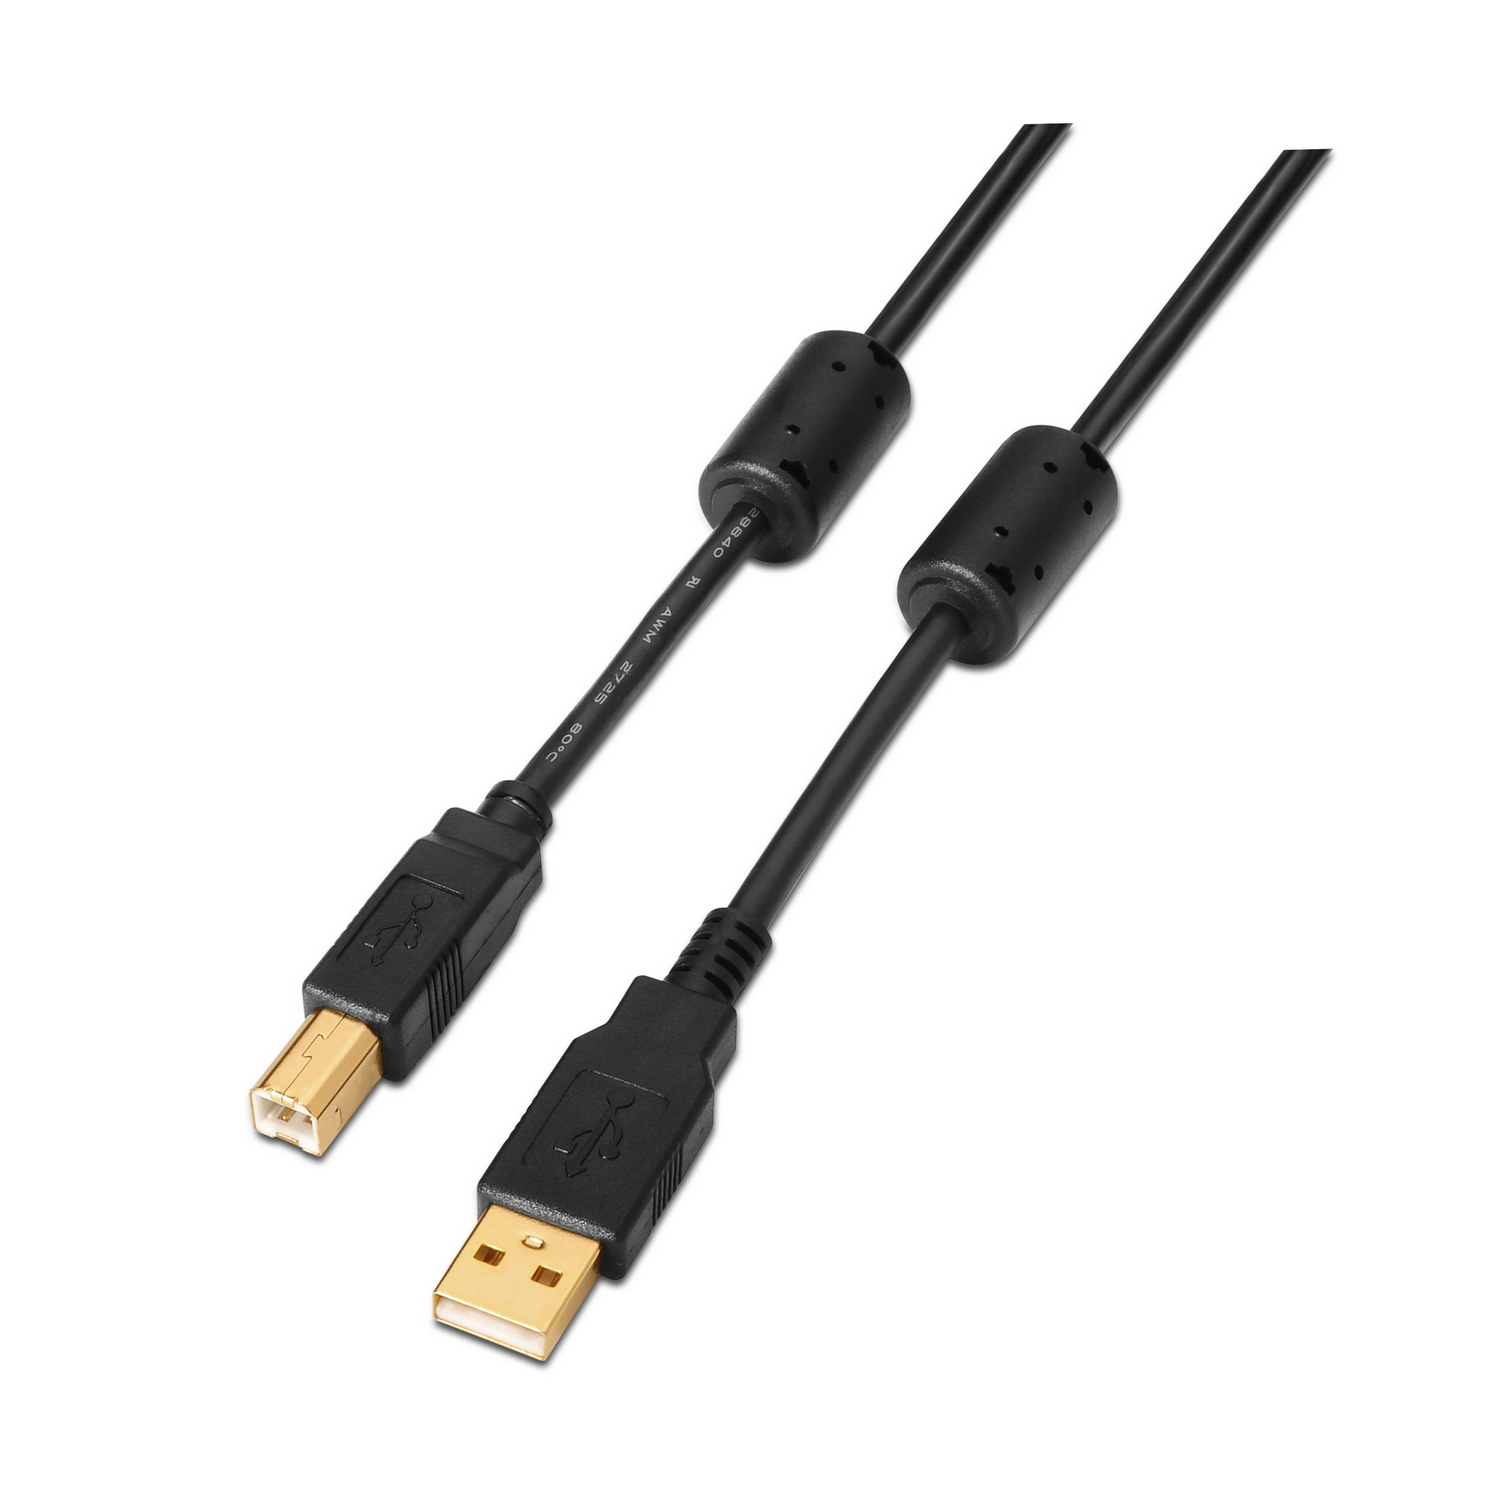 Impresora USB 2.0 Belkin Cable A/B Gris 6ft Nuevo Sellado De Fábrica 